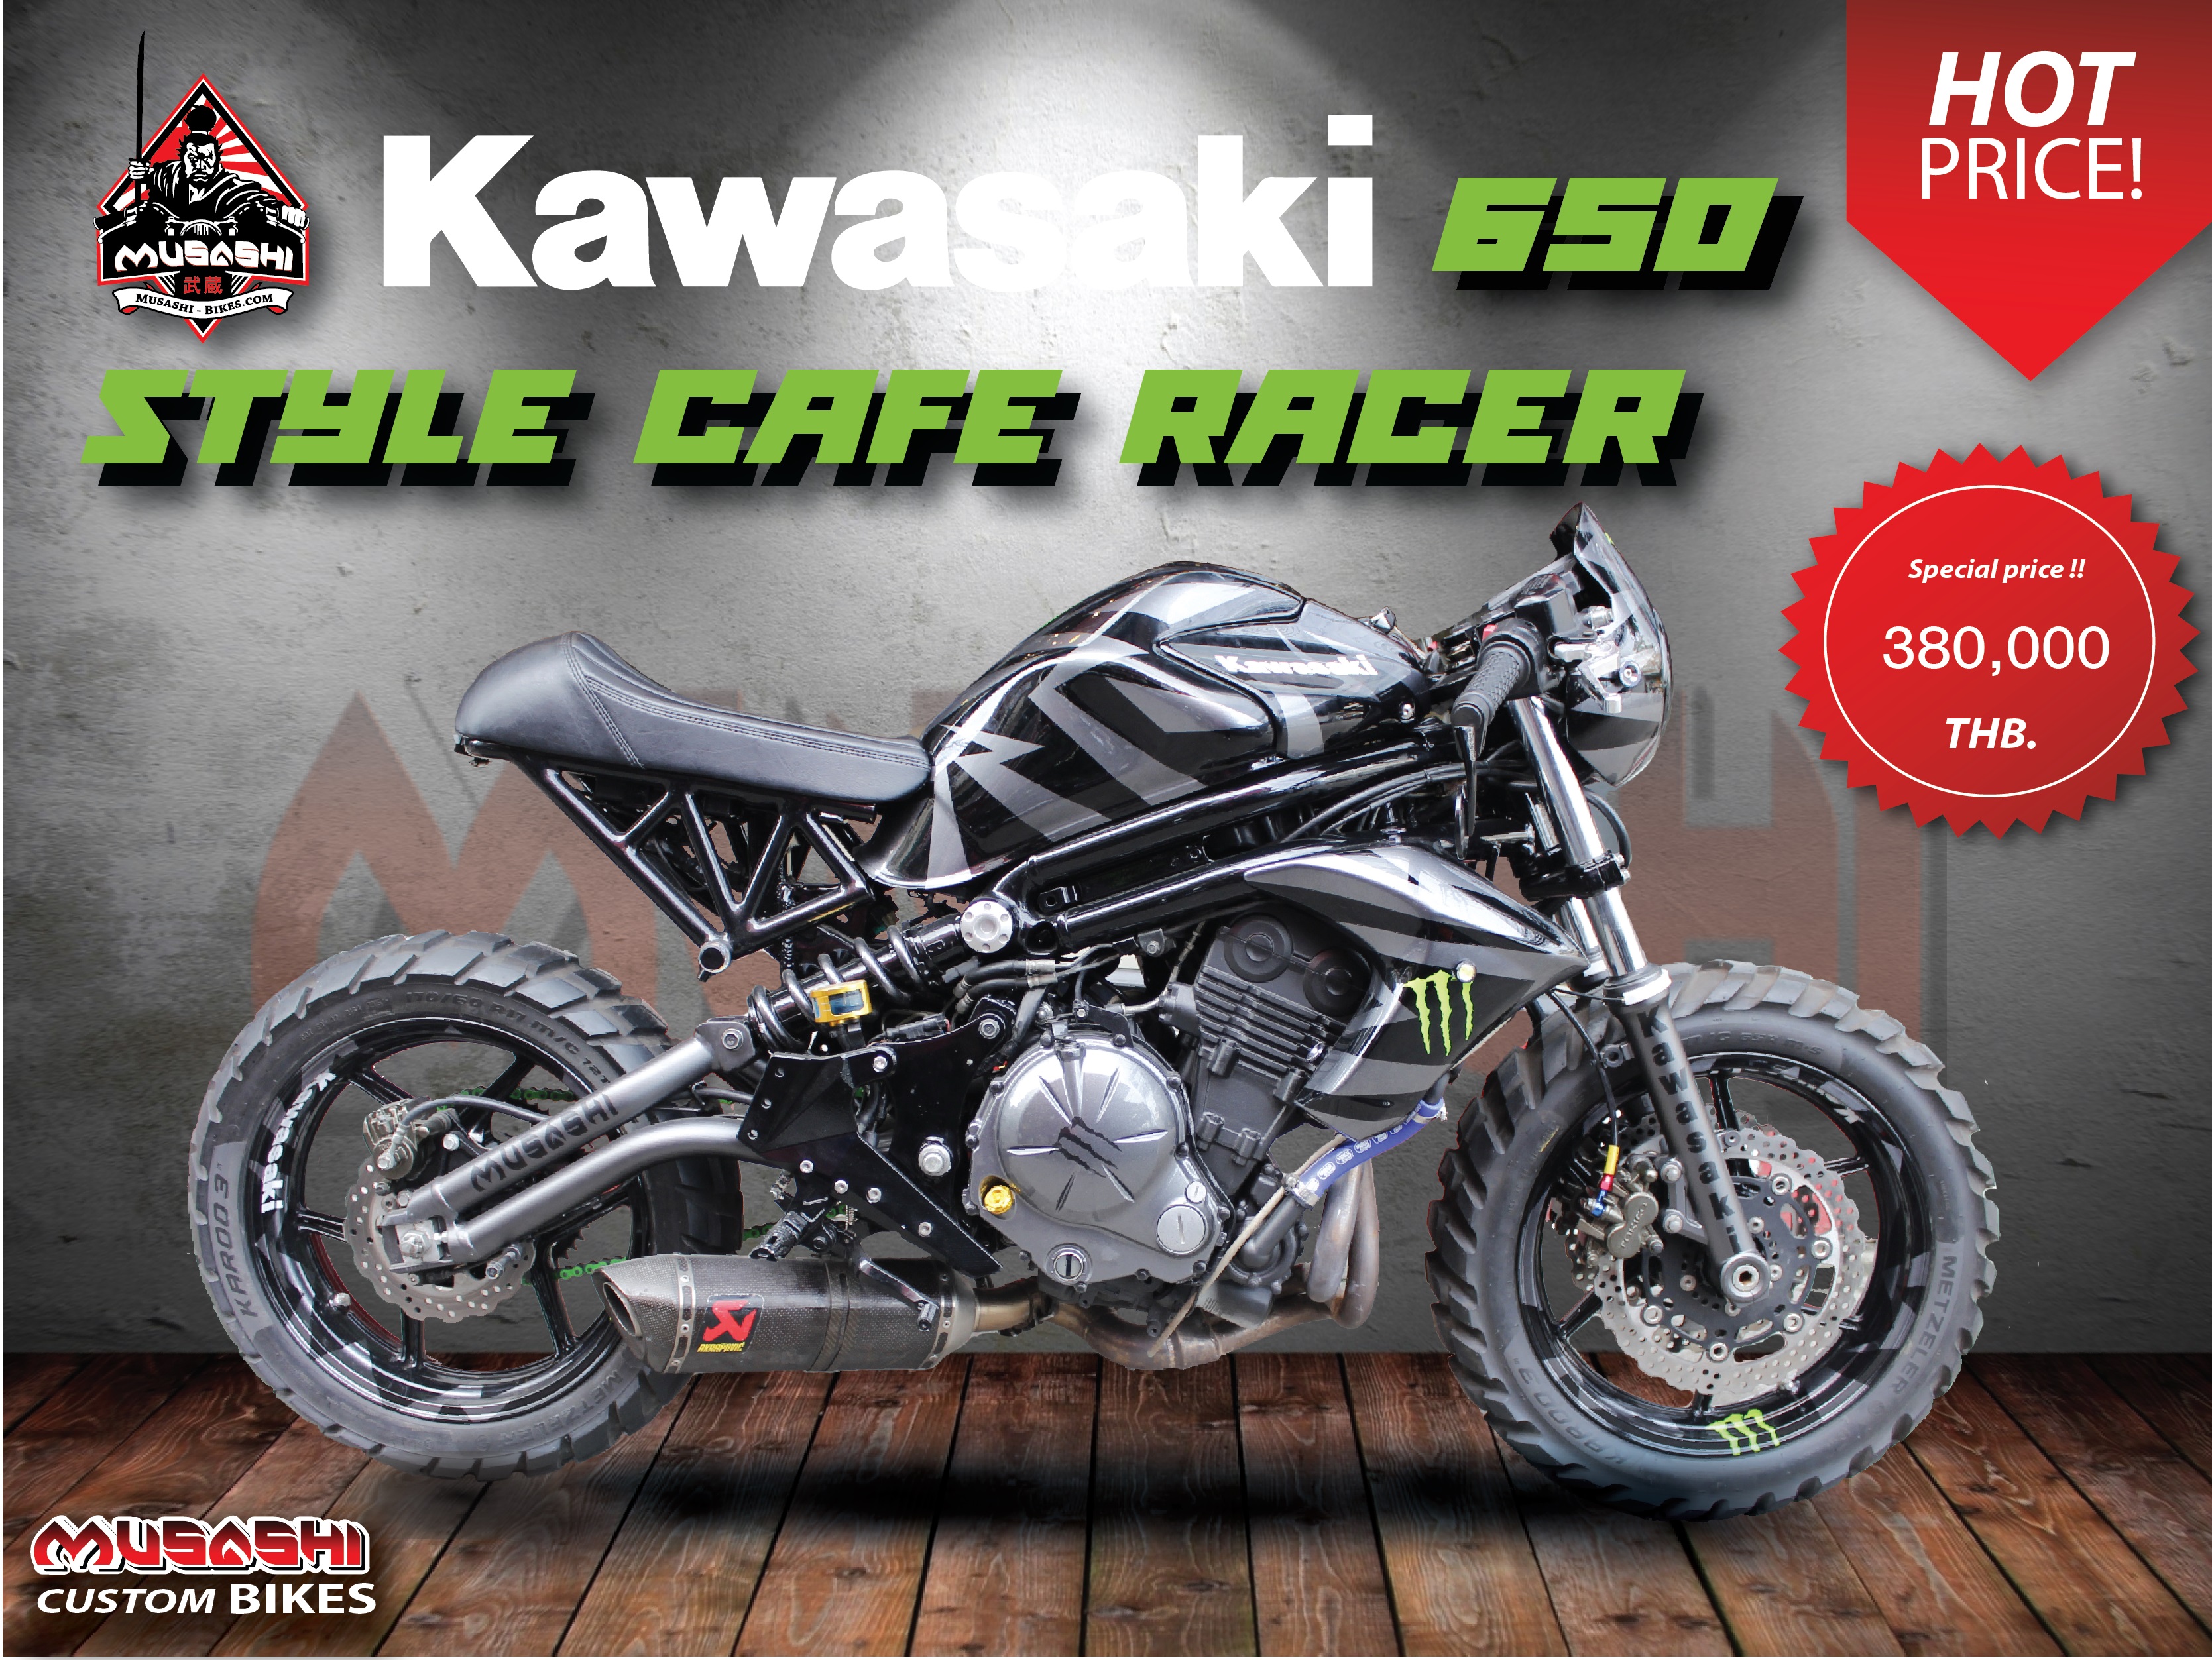 Kawasaki 650 Style cafe racer